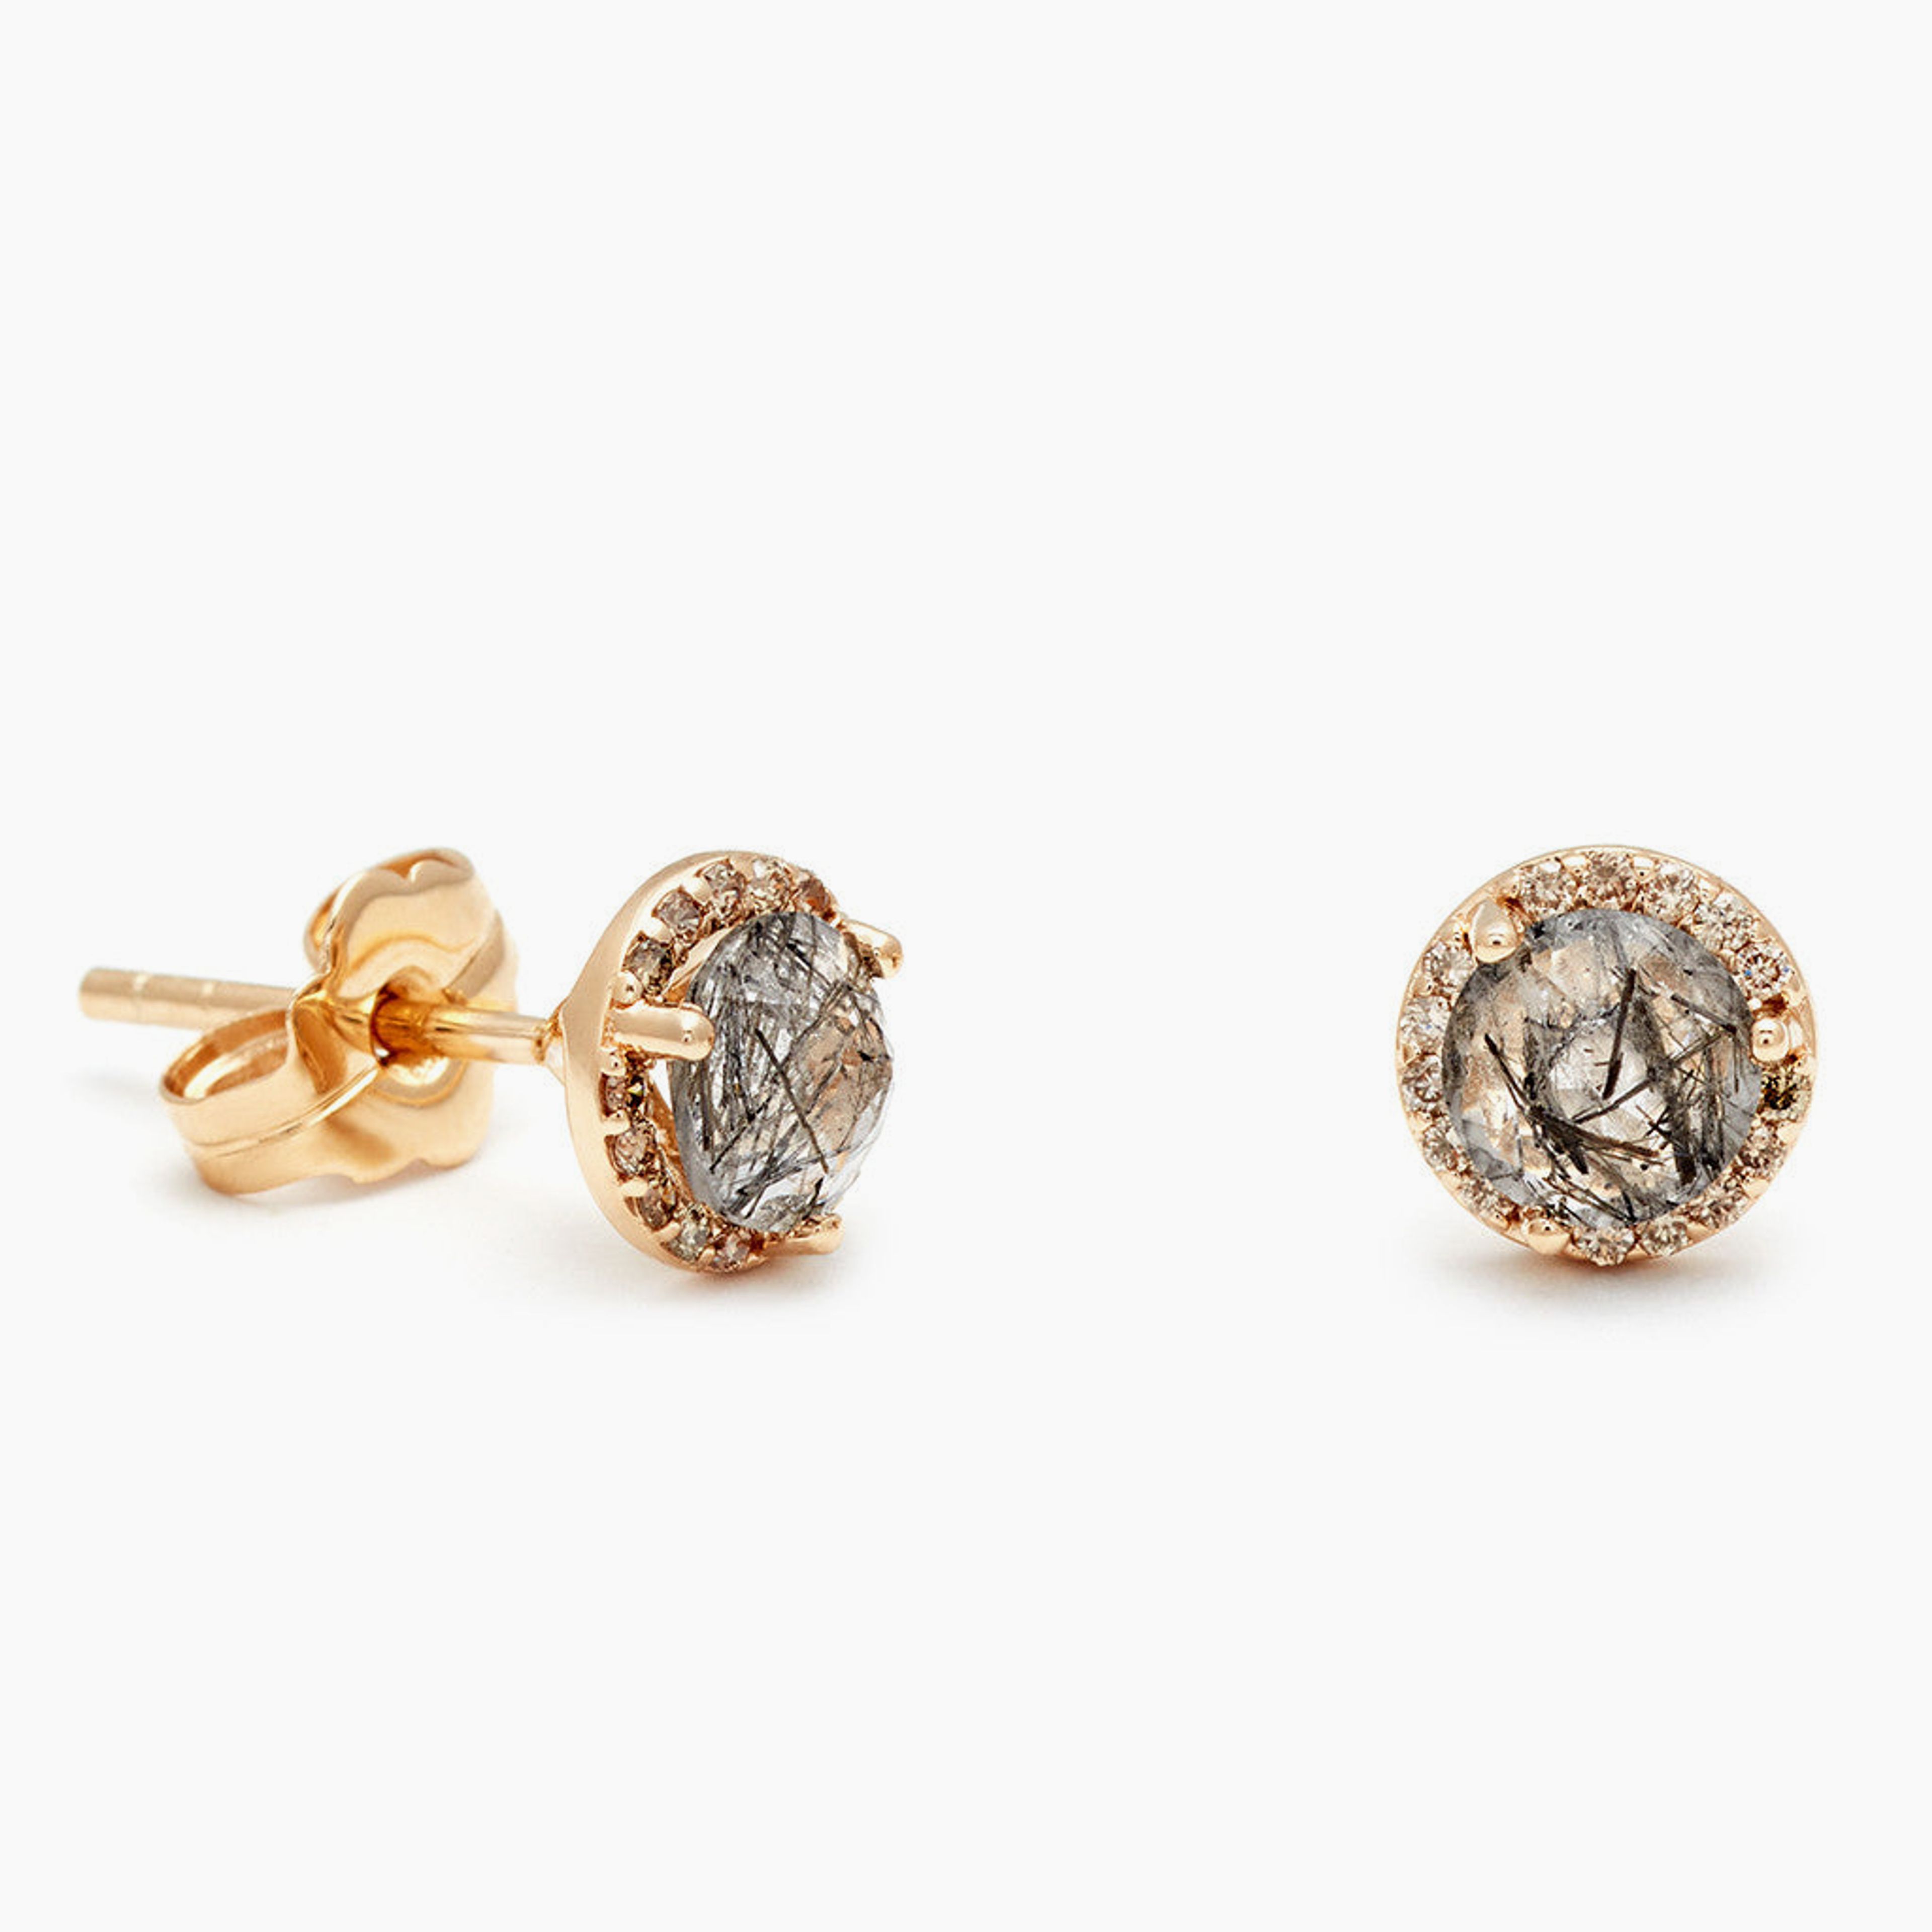 Rosette Stud Earring (Medium) - 14k Gold, Black Rutilated Quartz & Champagne Diamond